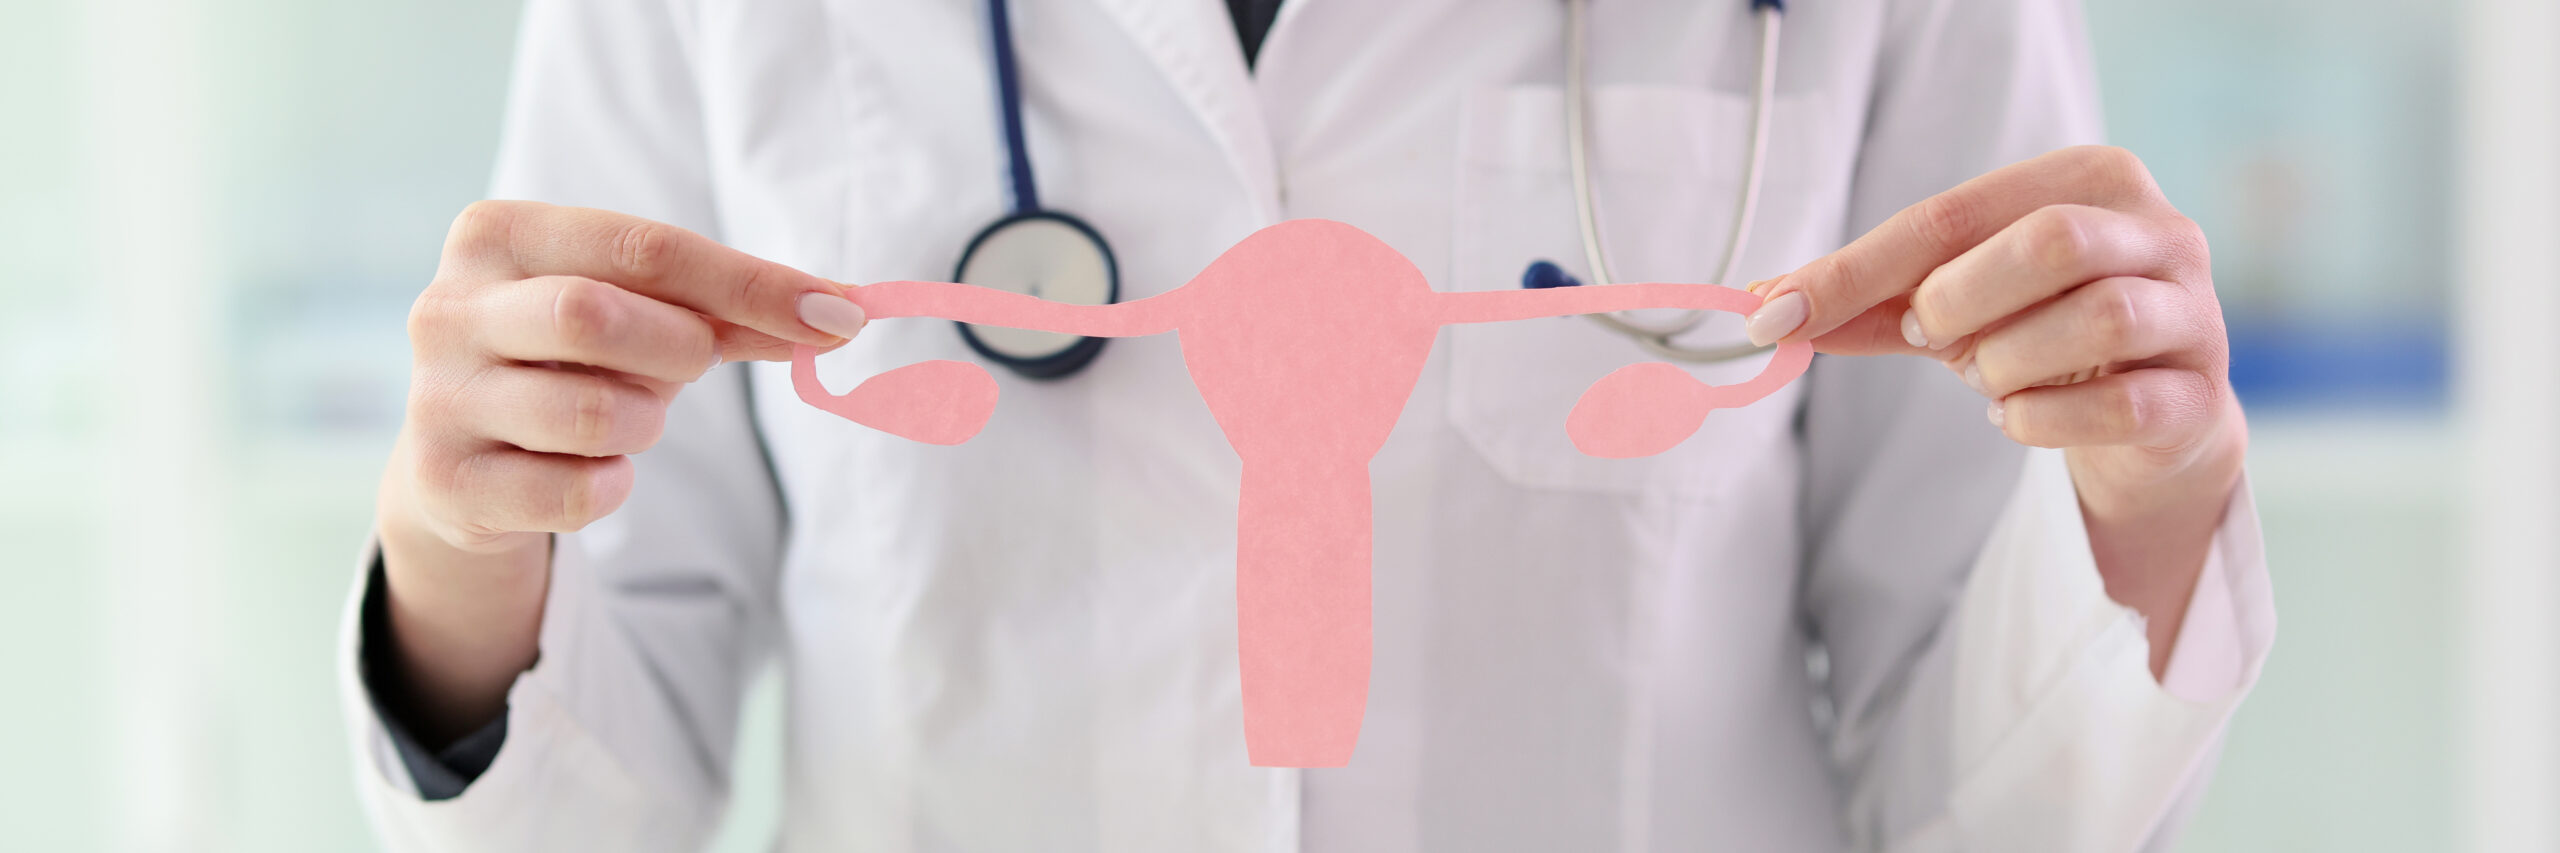 eine Person in einem Arztkittel hält einen pinkfarbenen Uterus aus Papier hoch